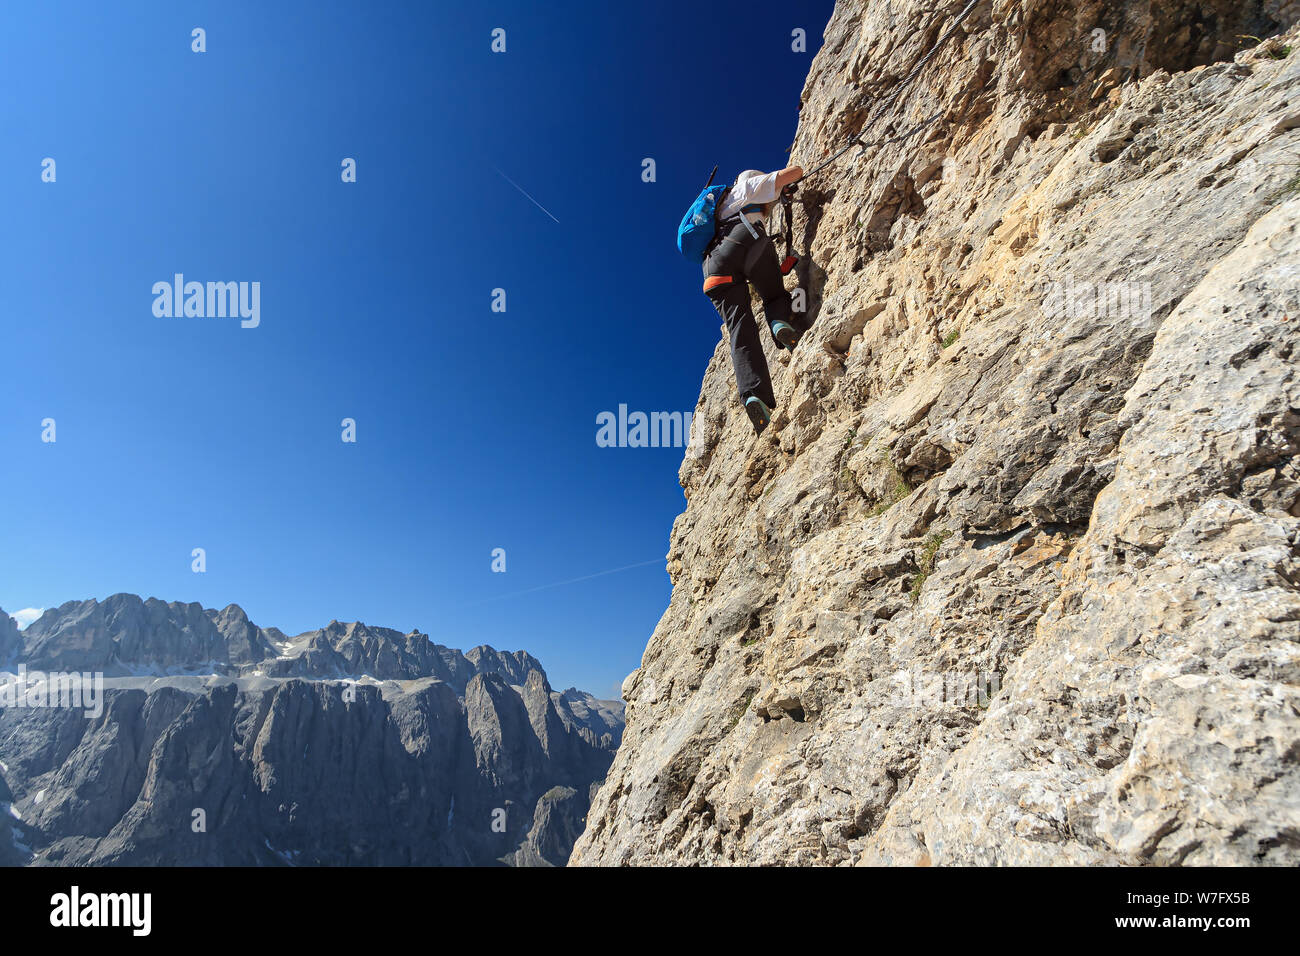 Dolomiti - Female climber on Cir V Via Ferrata, Gardena Pass, Italy Stock Photo